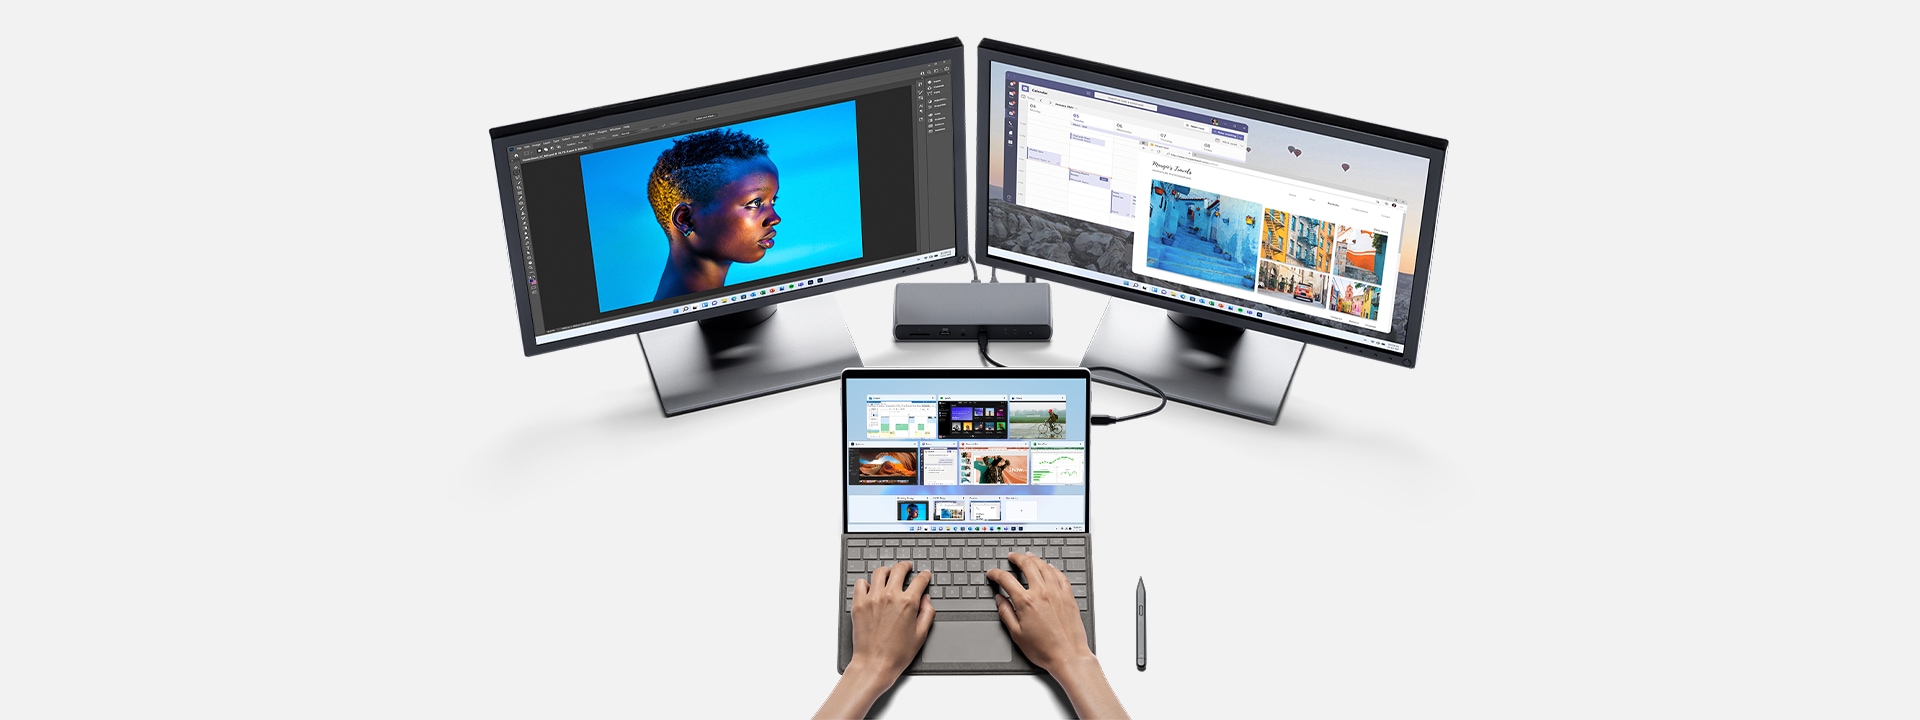 Visualizzazione di Photoshop su un dispositivo Surface Pro 8 collegato a una workstation.